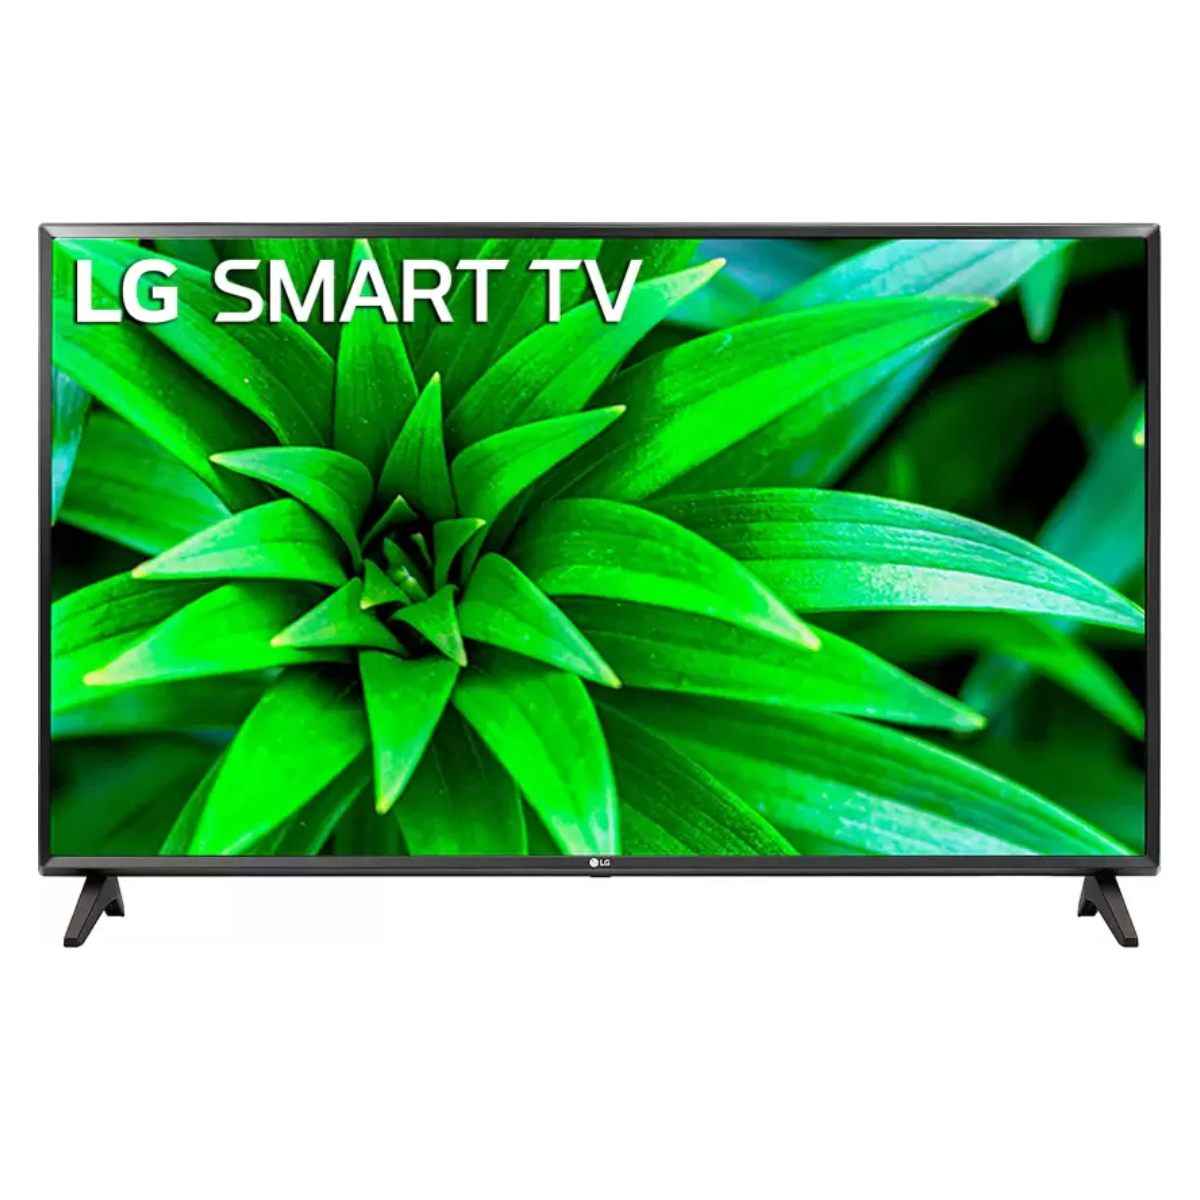 LG 32 inch HD Ready LED TV (32LM565BPTA)